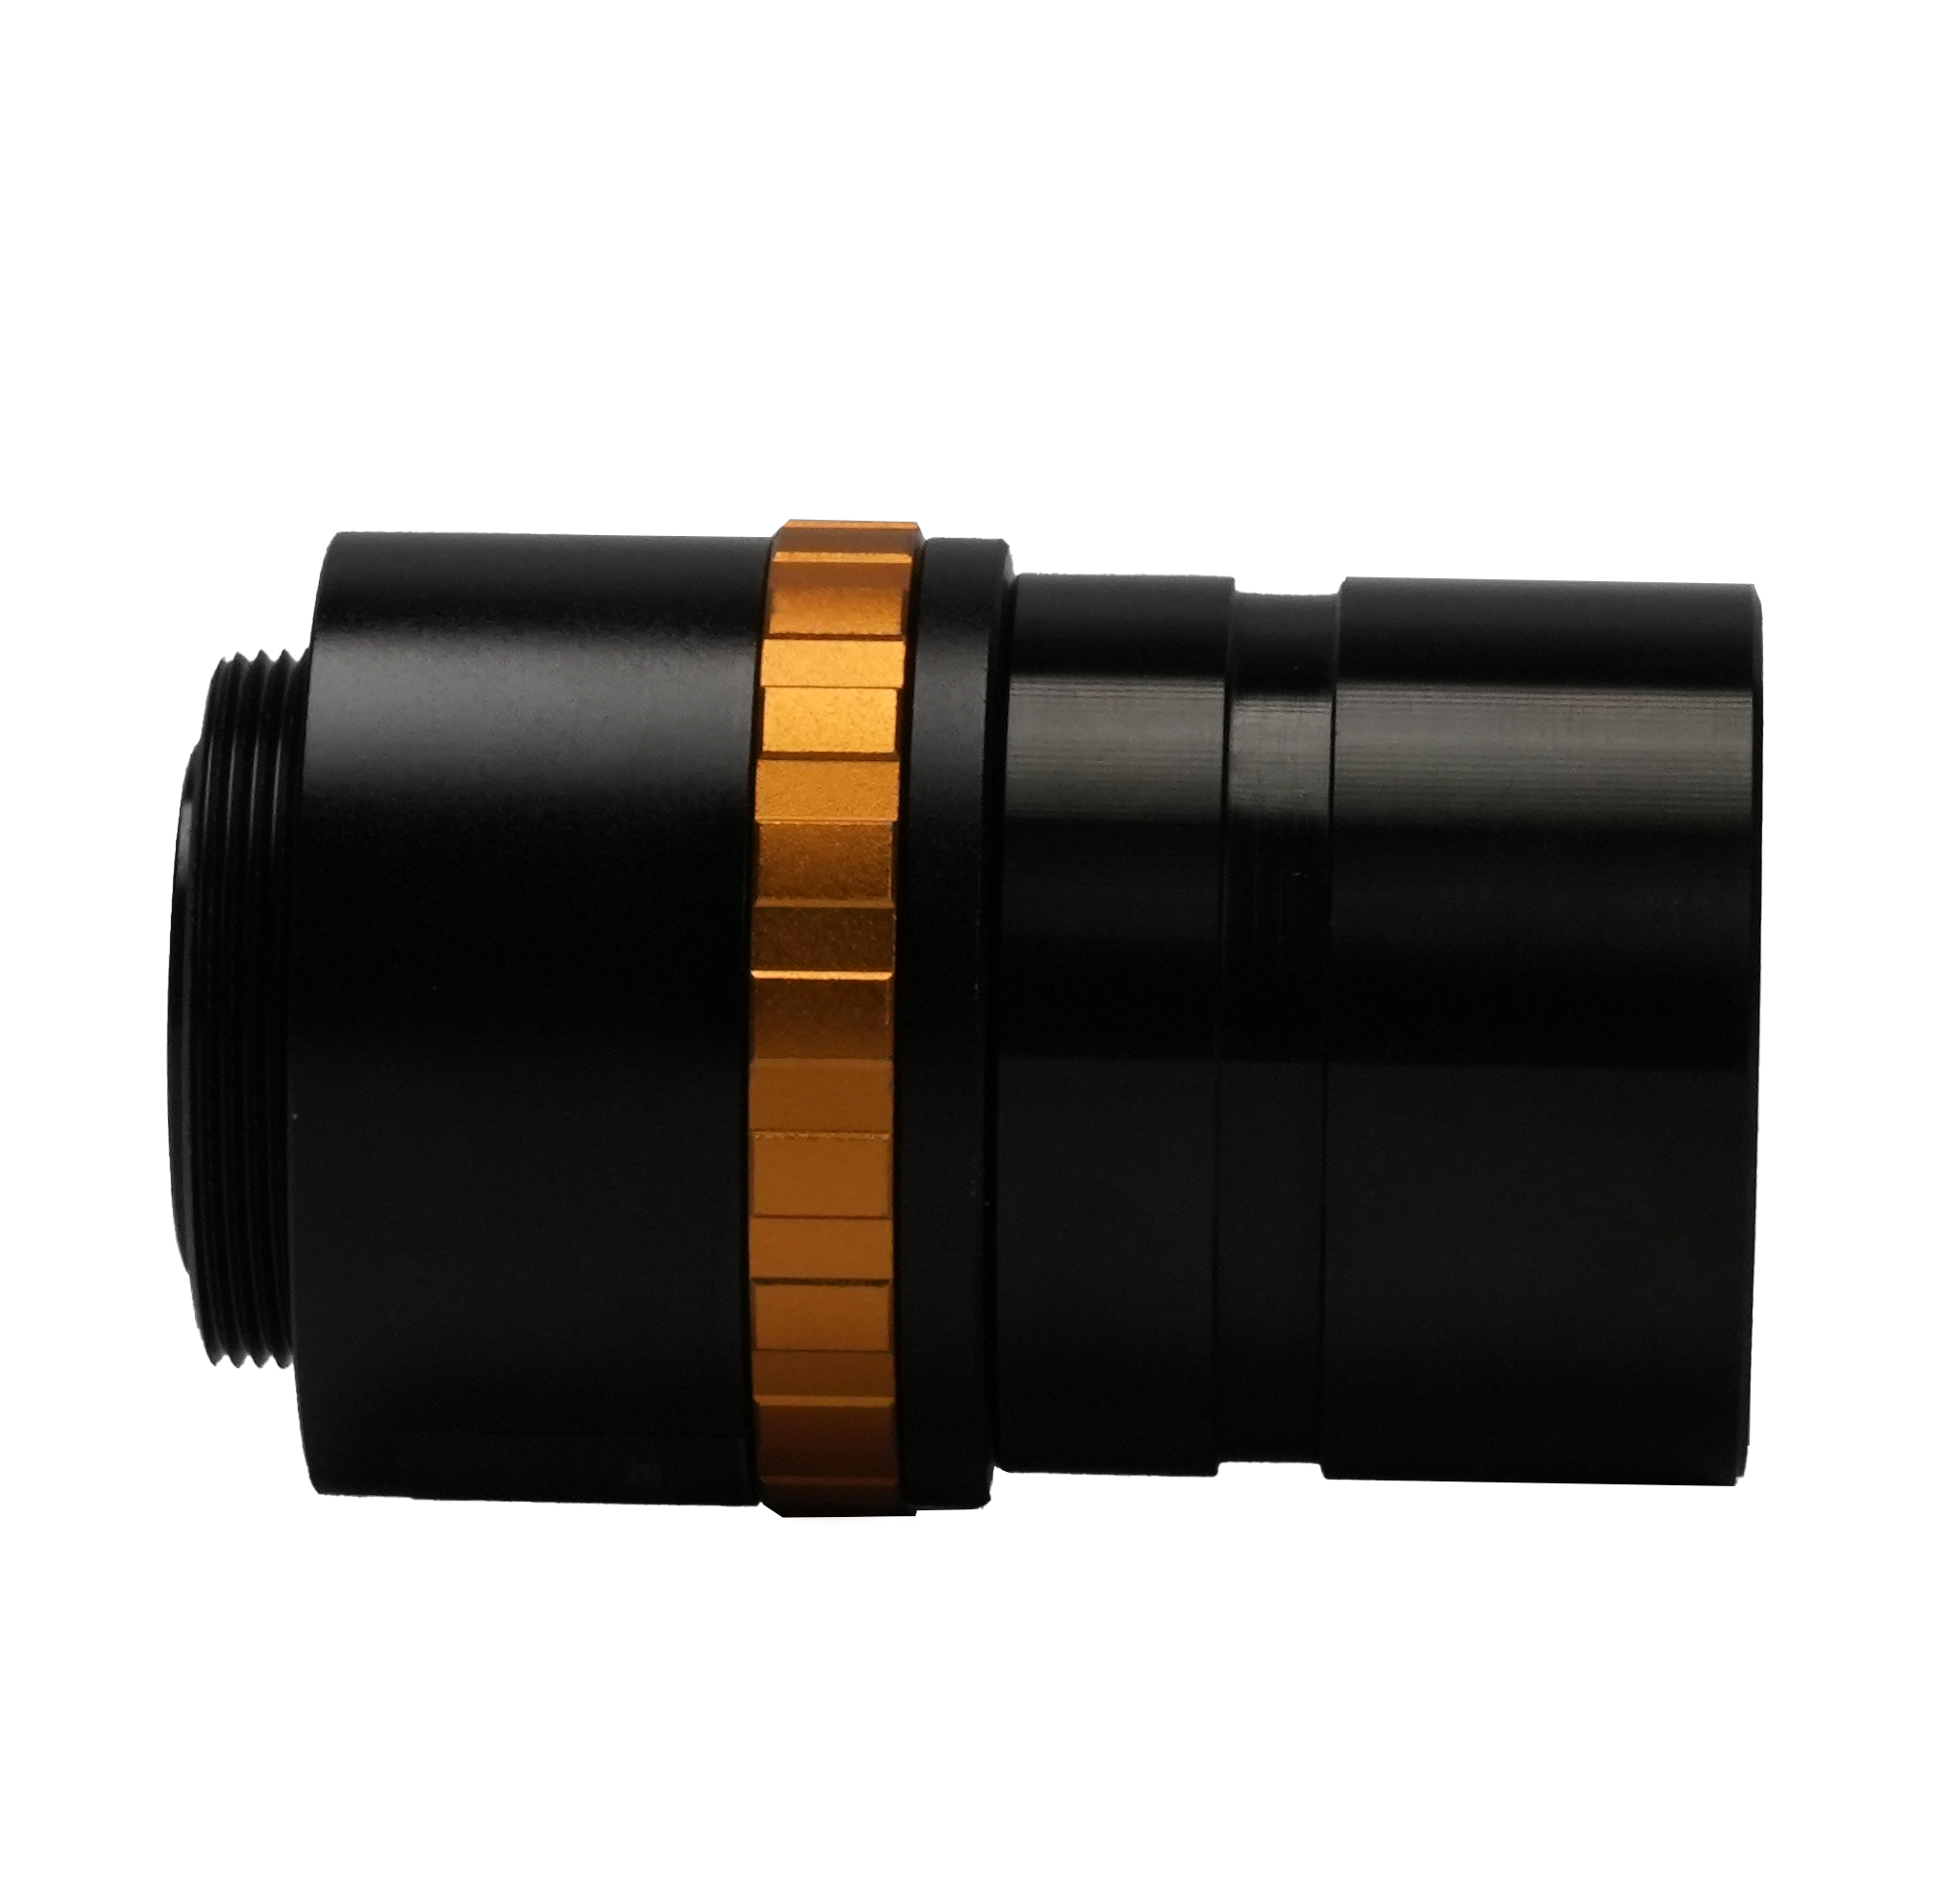 BCN3A-0.5x Penyesuai Kaca Mata Mikroskop Boleh Laras 31.75mm